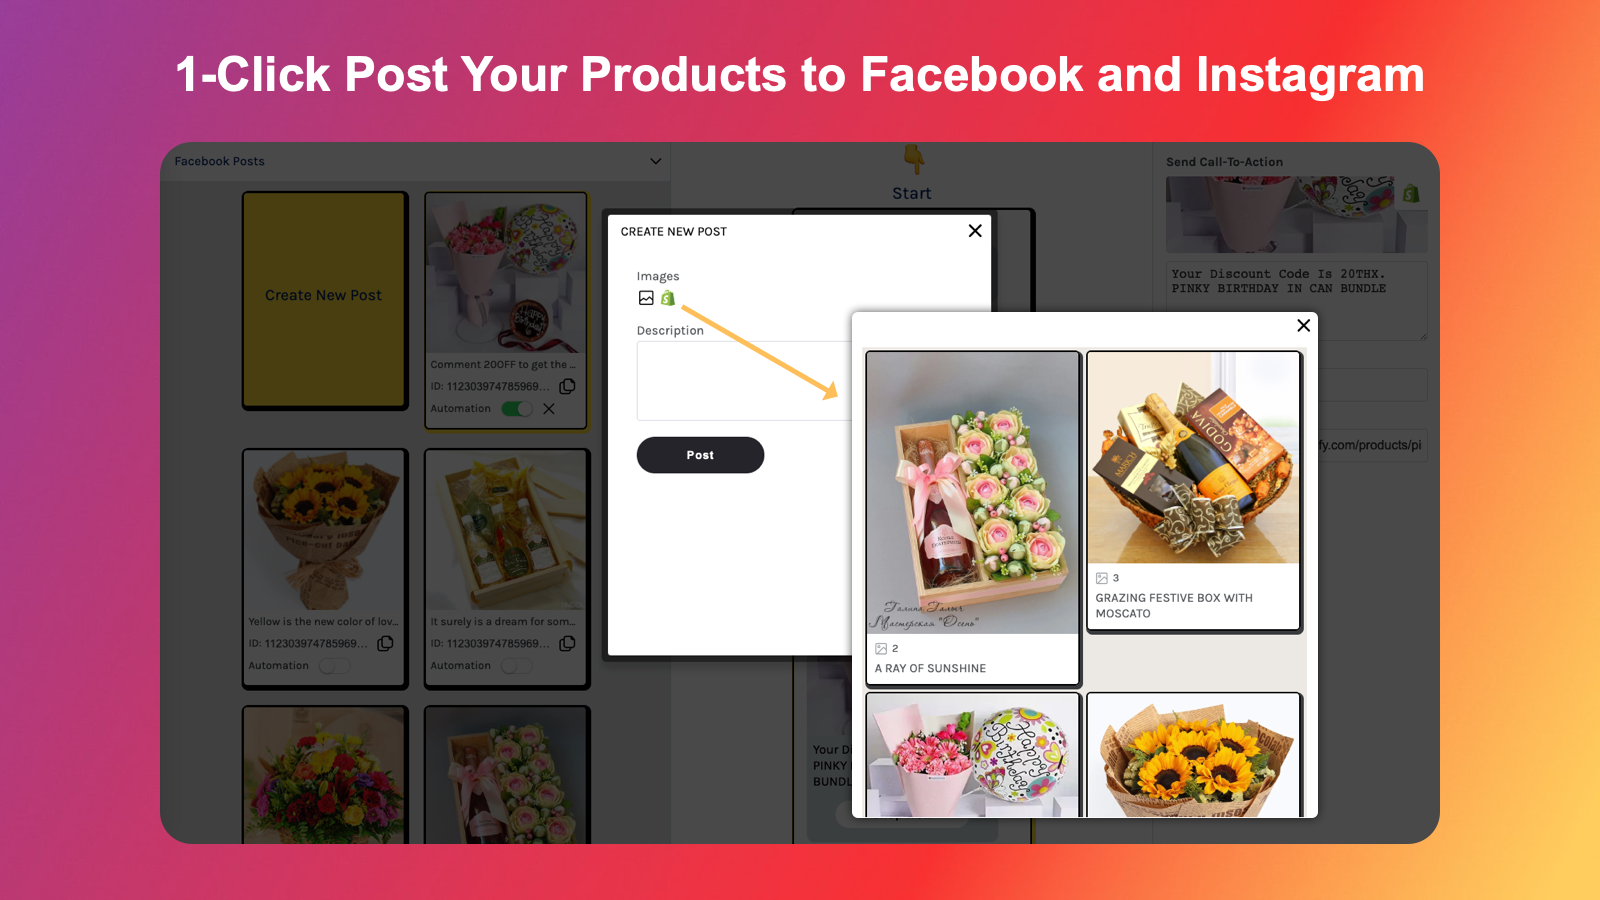 将您的产品发布到 Instagram 和 Facebook 是一件简单的事情